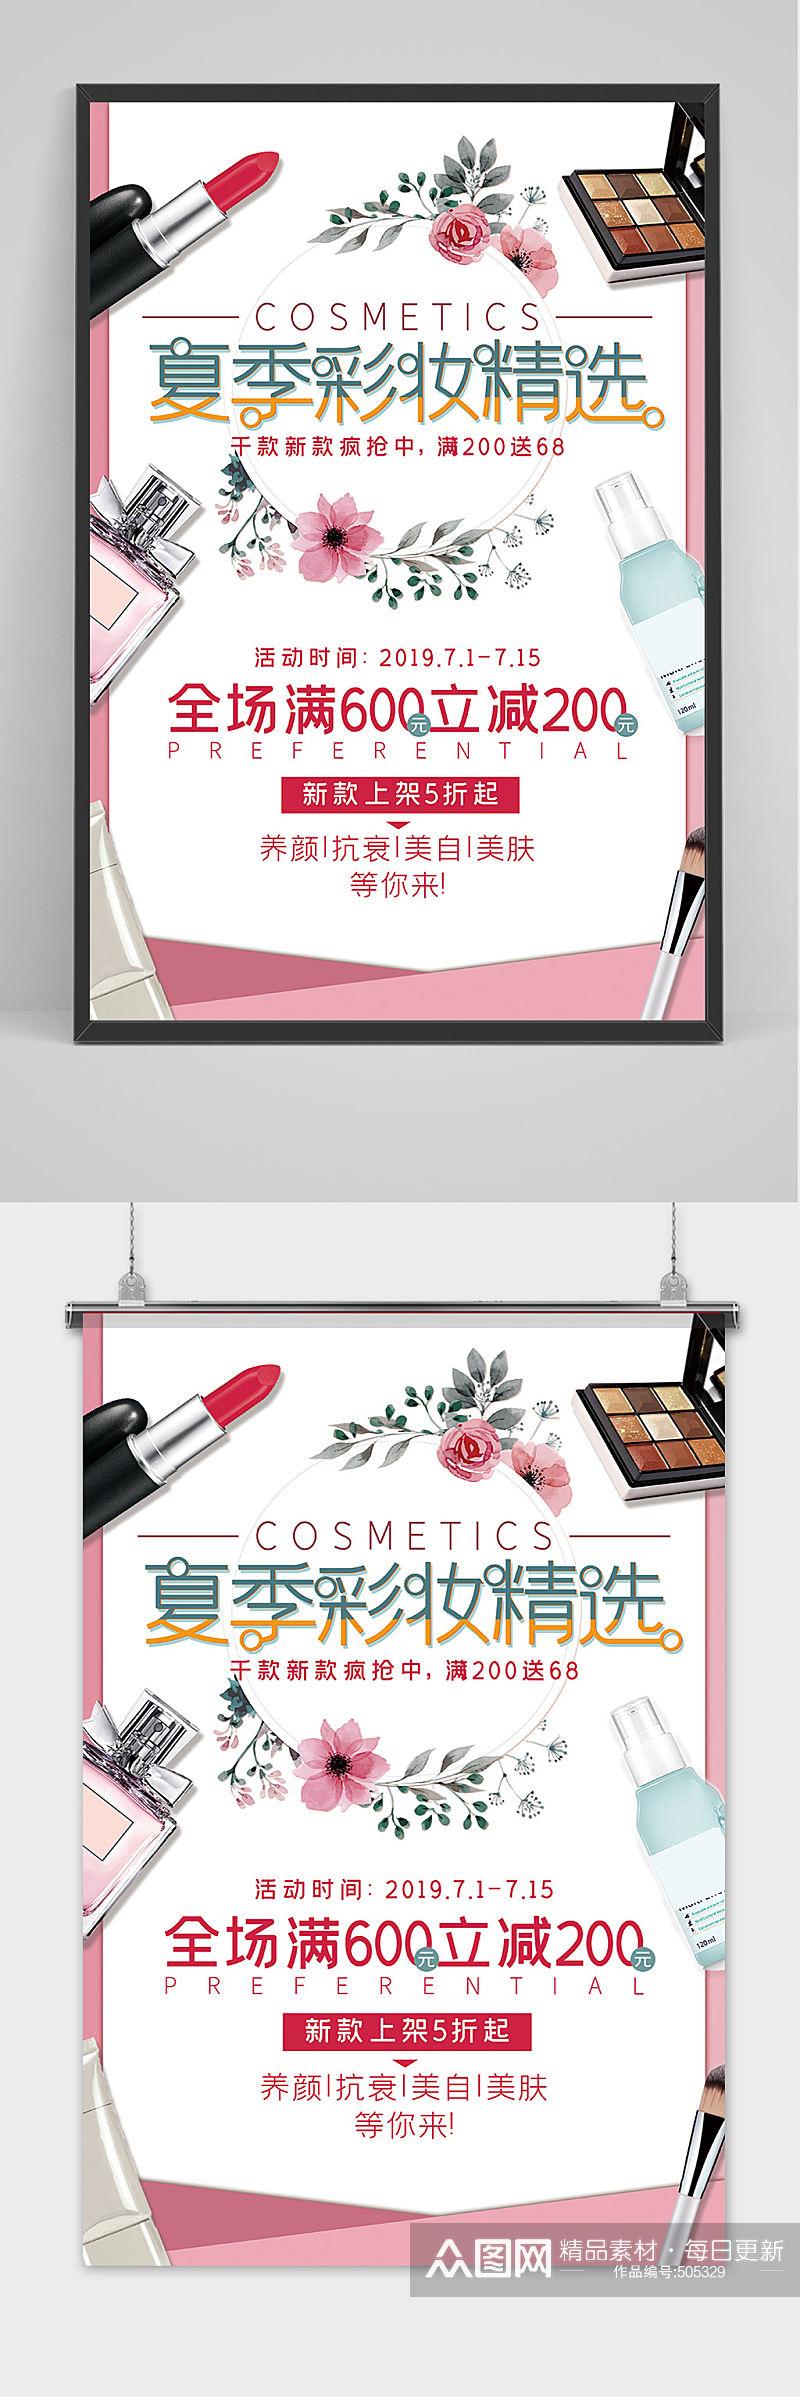 夏季防晒彩妆化妆品海报设计素材